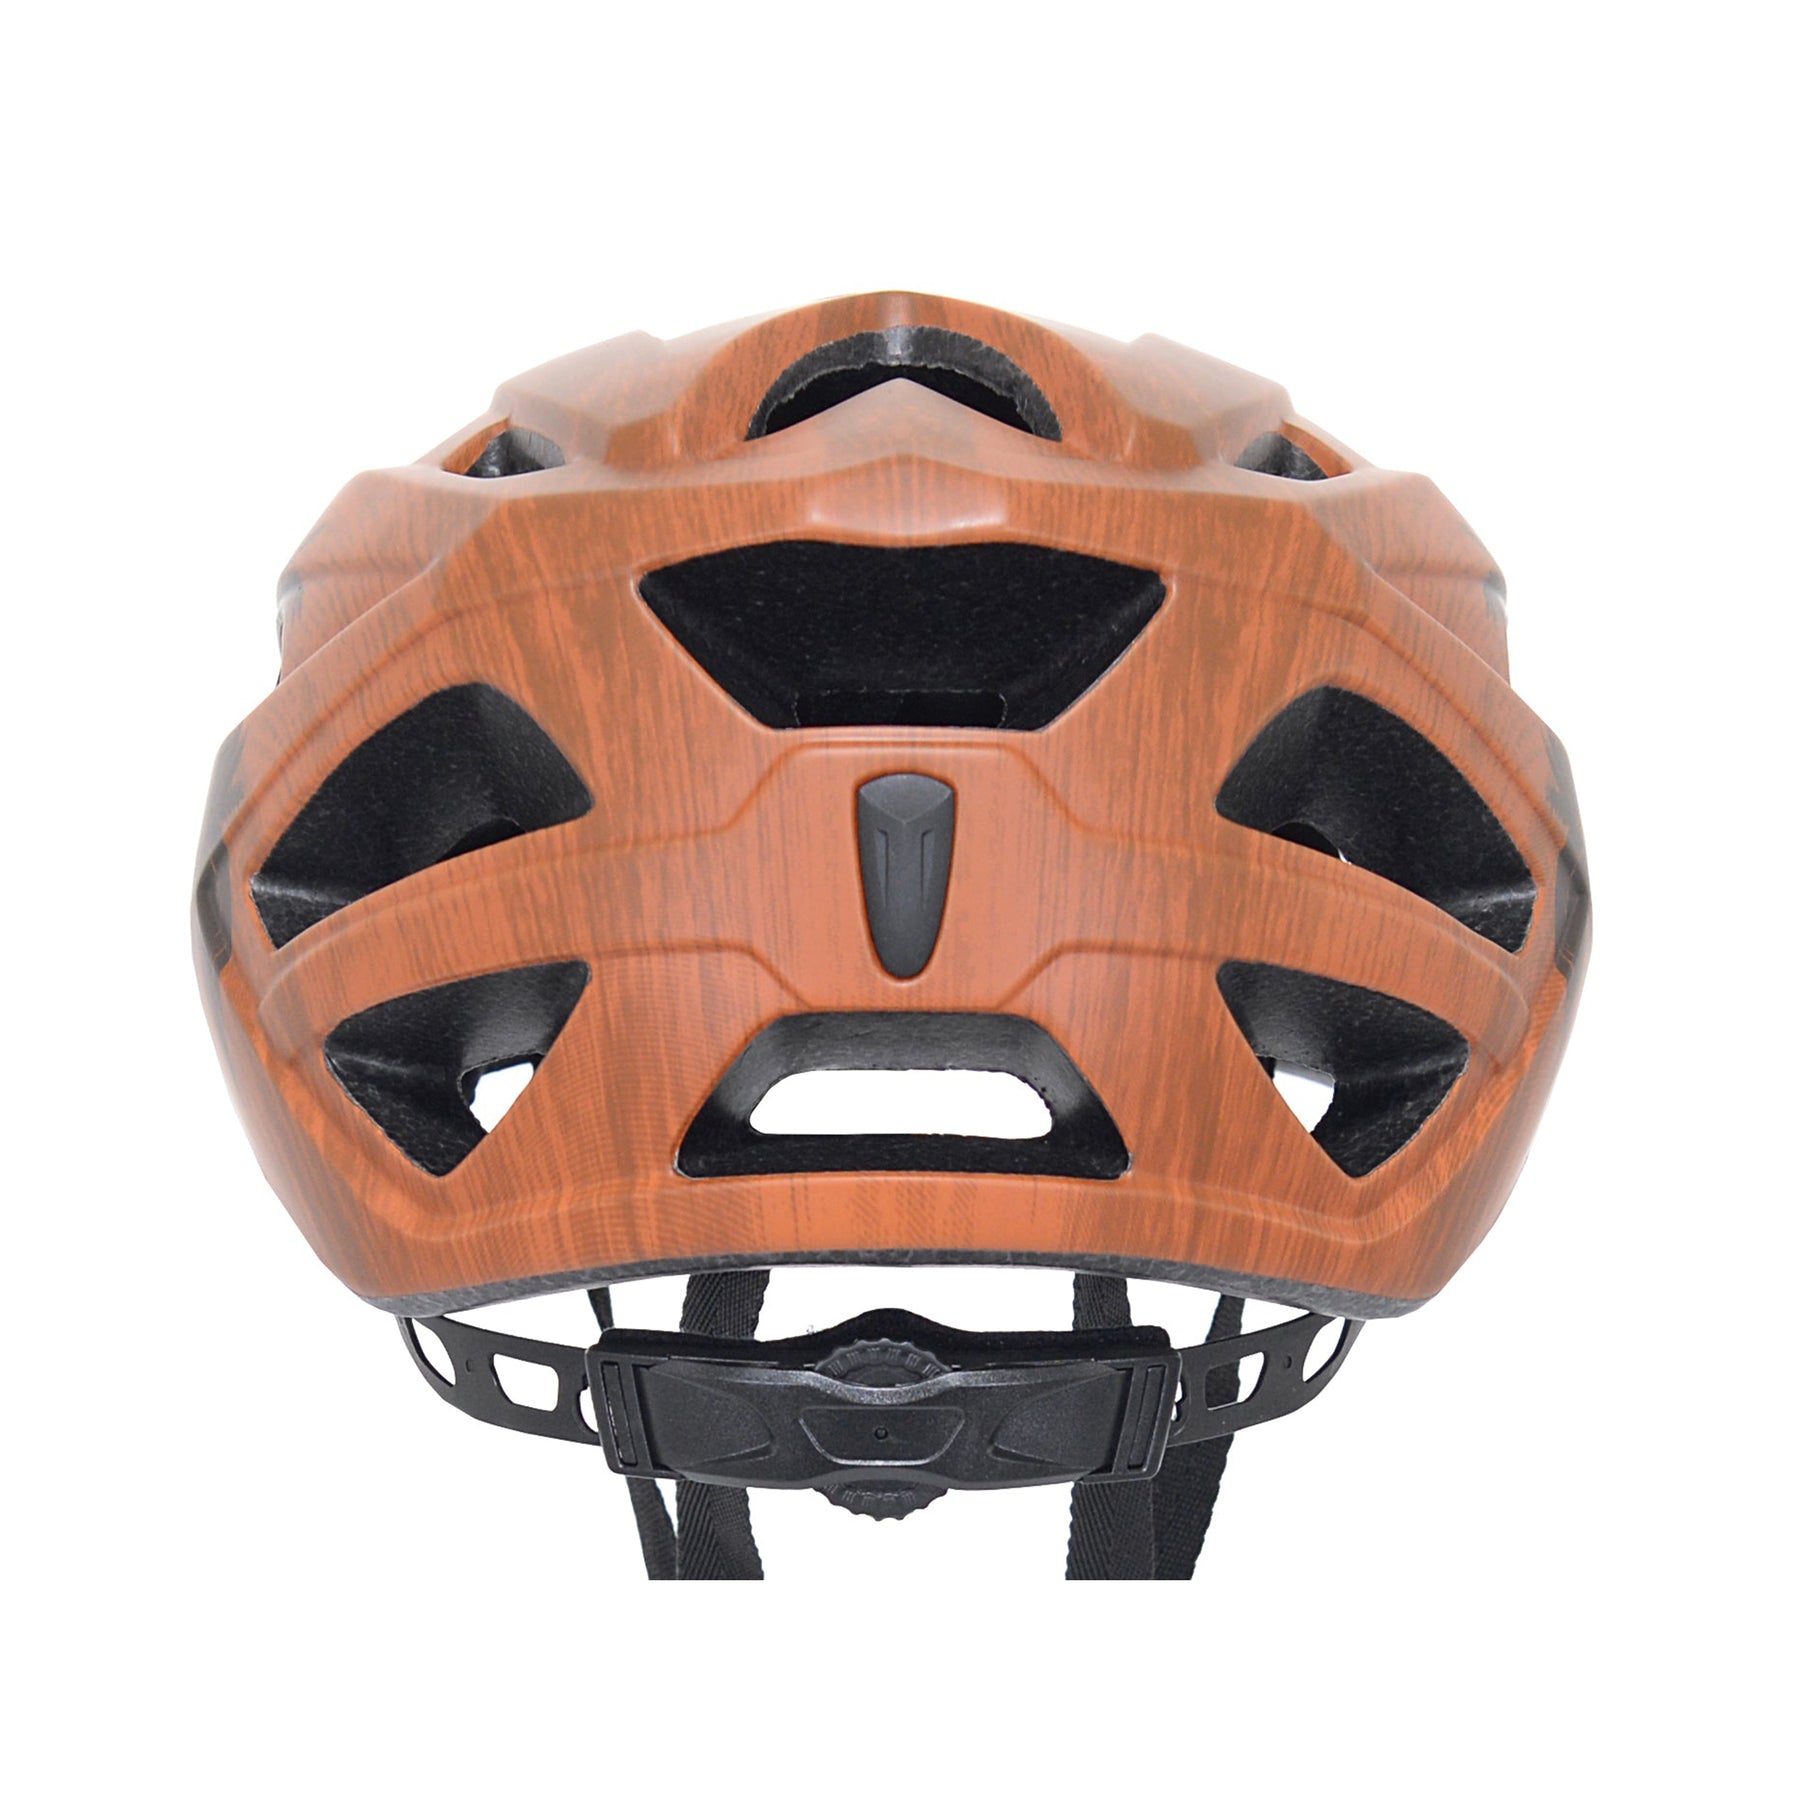 Margaritaville® Wood Grain Adult Bicycle Helmet | Helmet for Adults Ages 13+